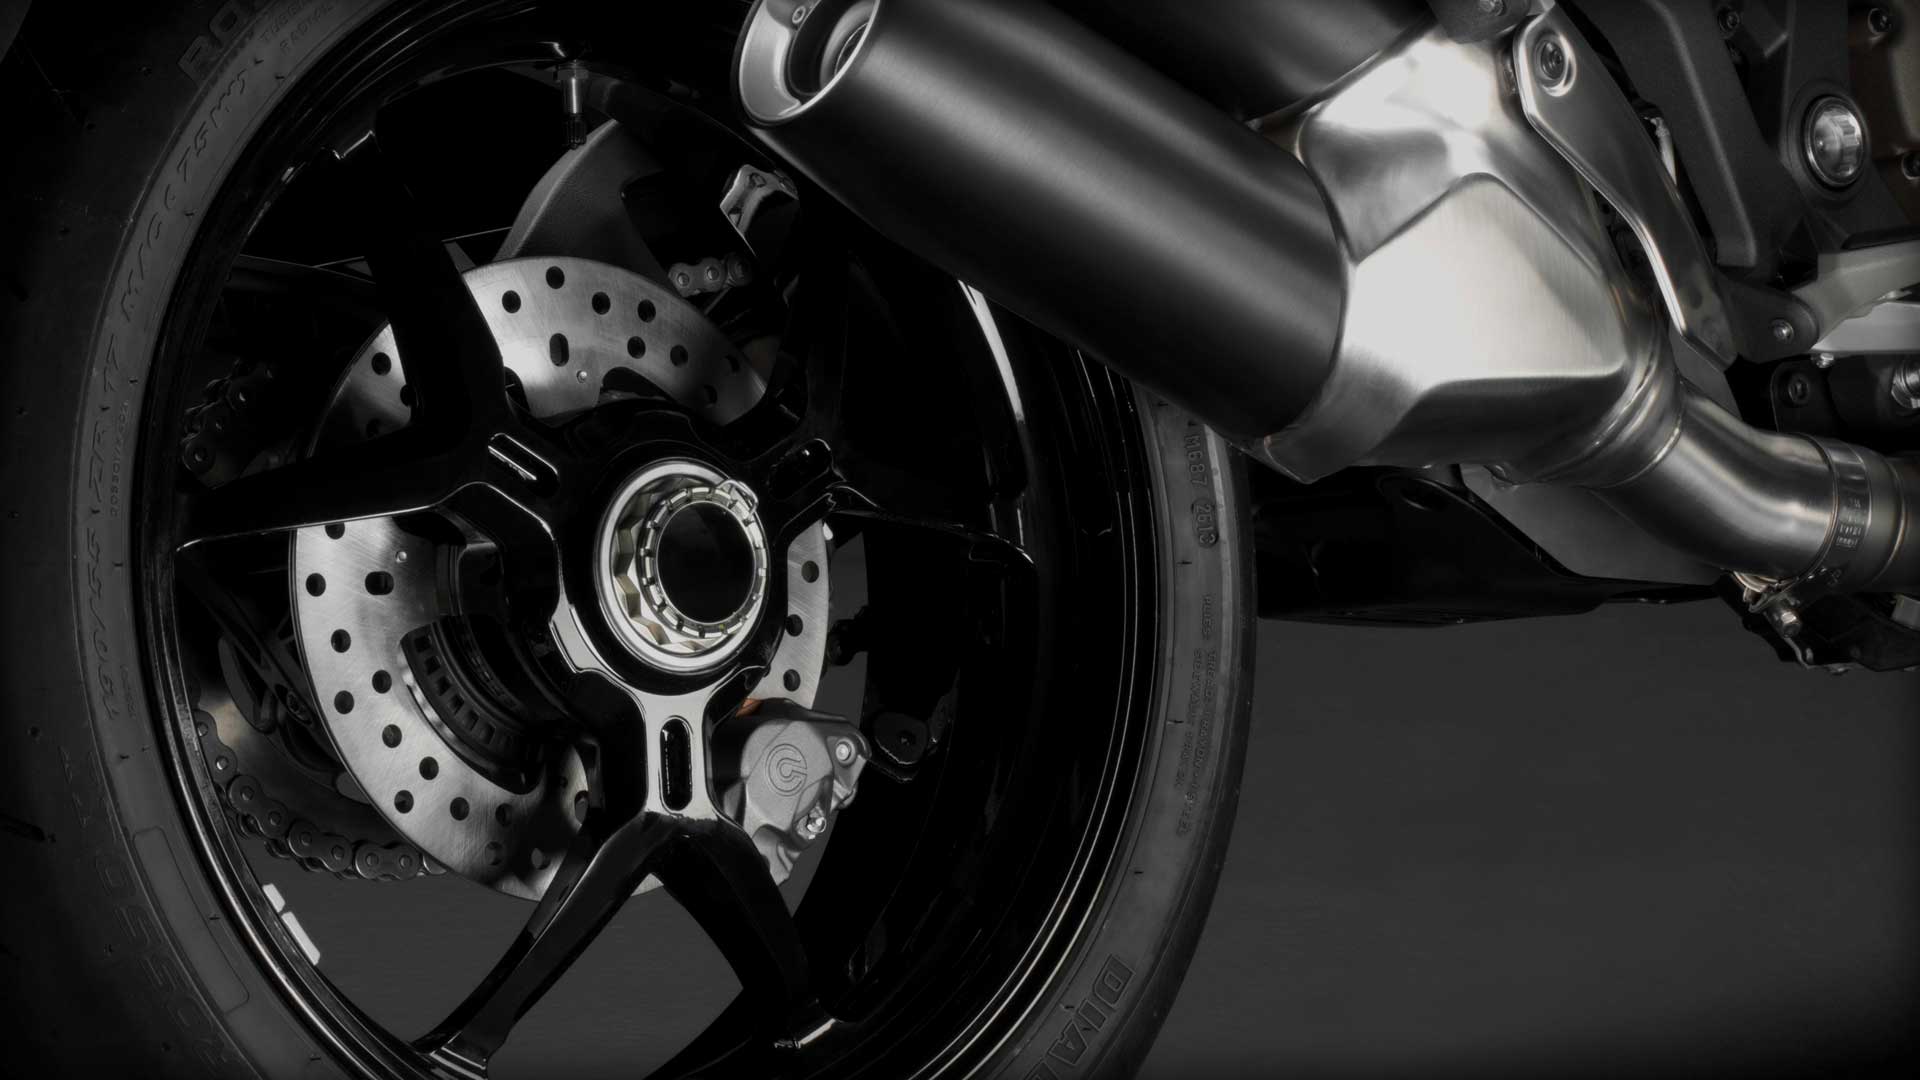 2014 Ducati Monster 1200 S Tyre